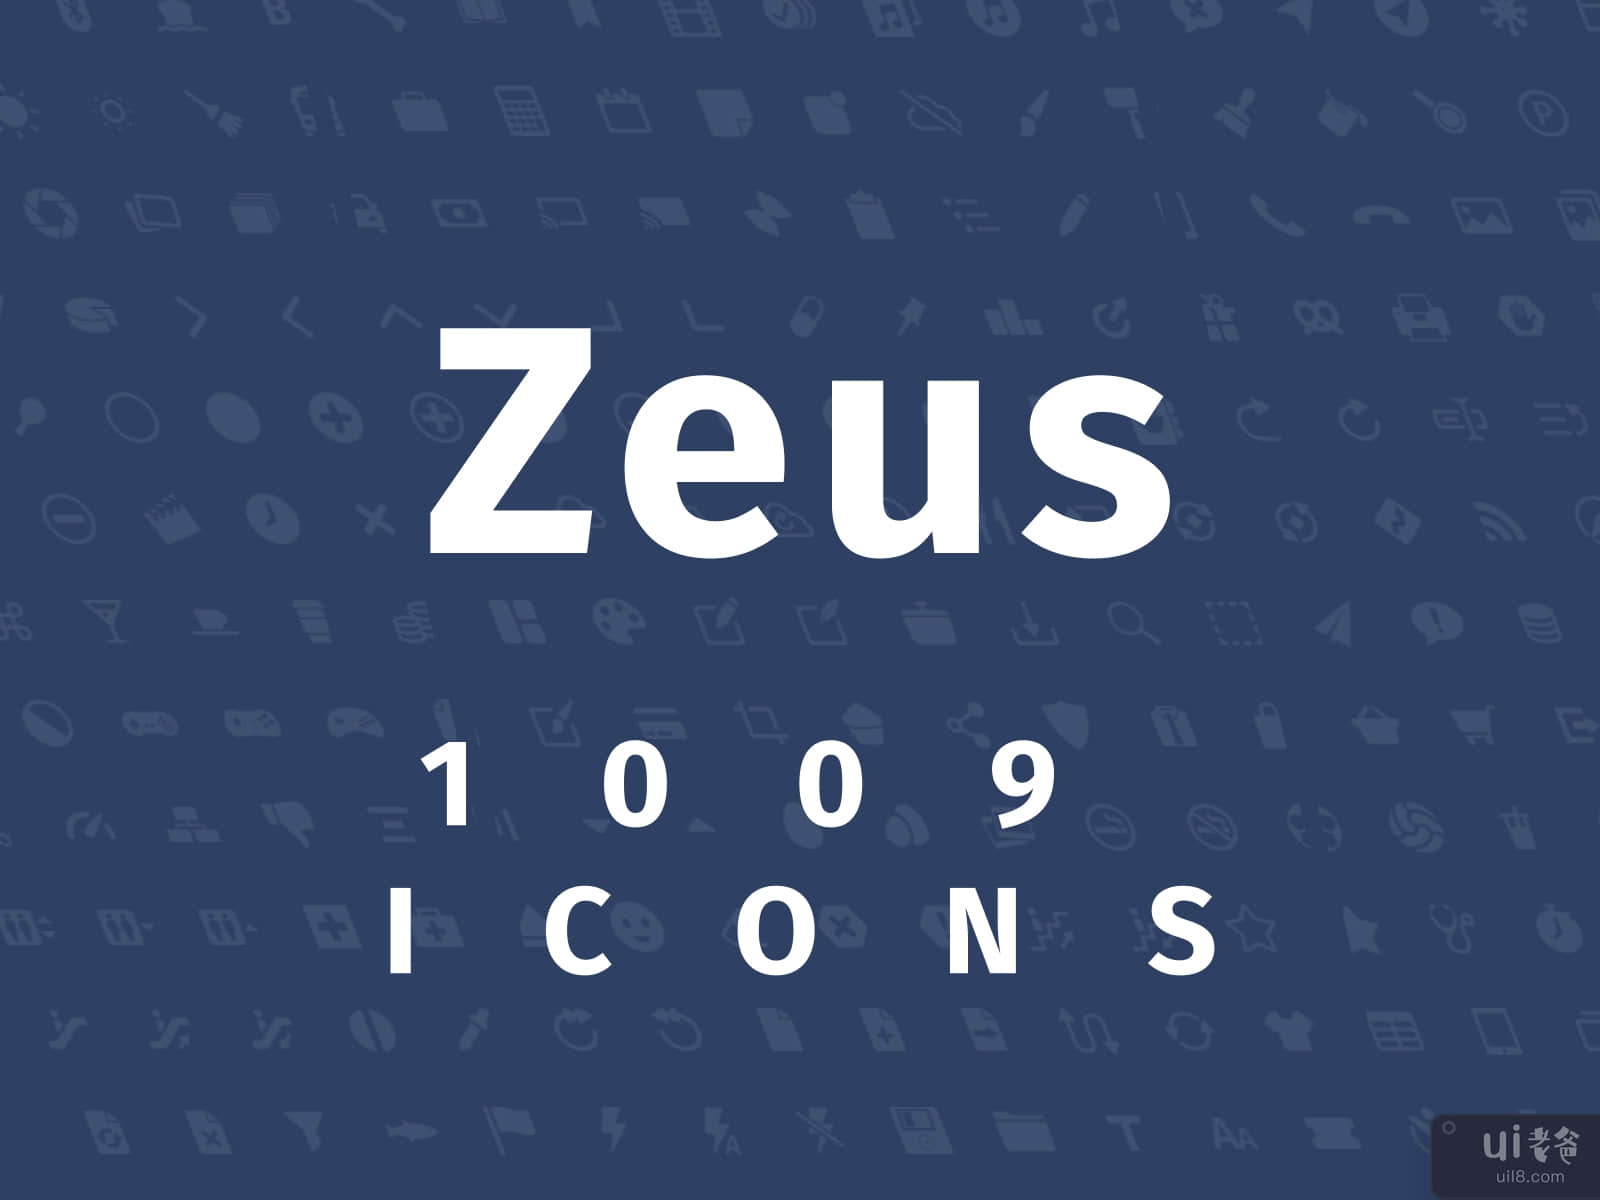 Zeus Icons Set 